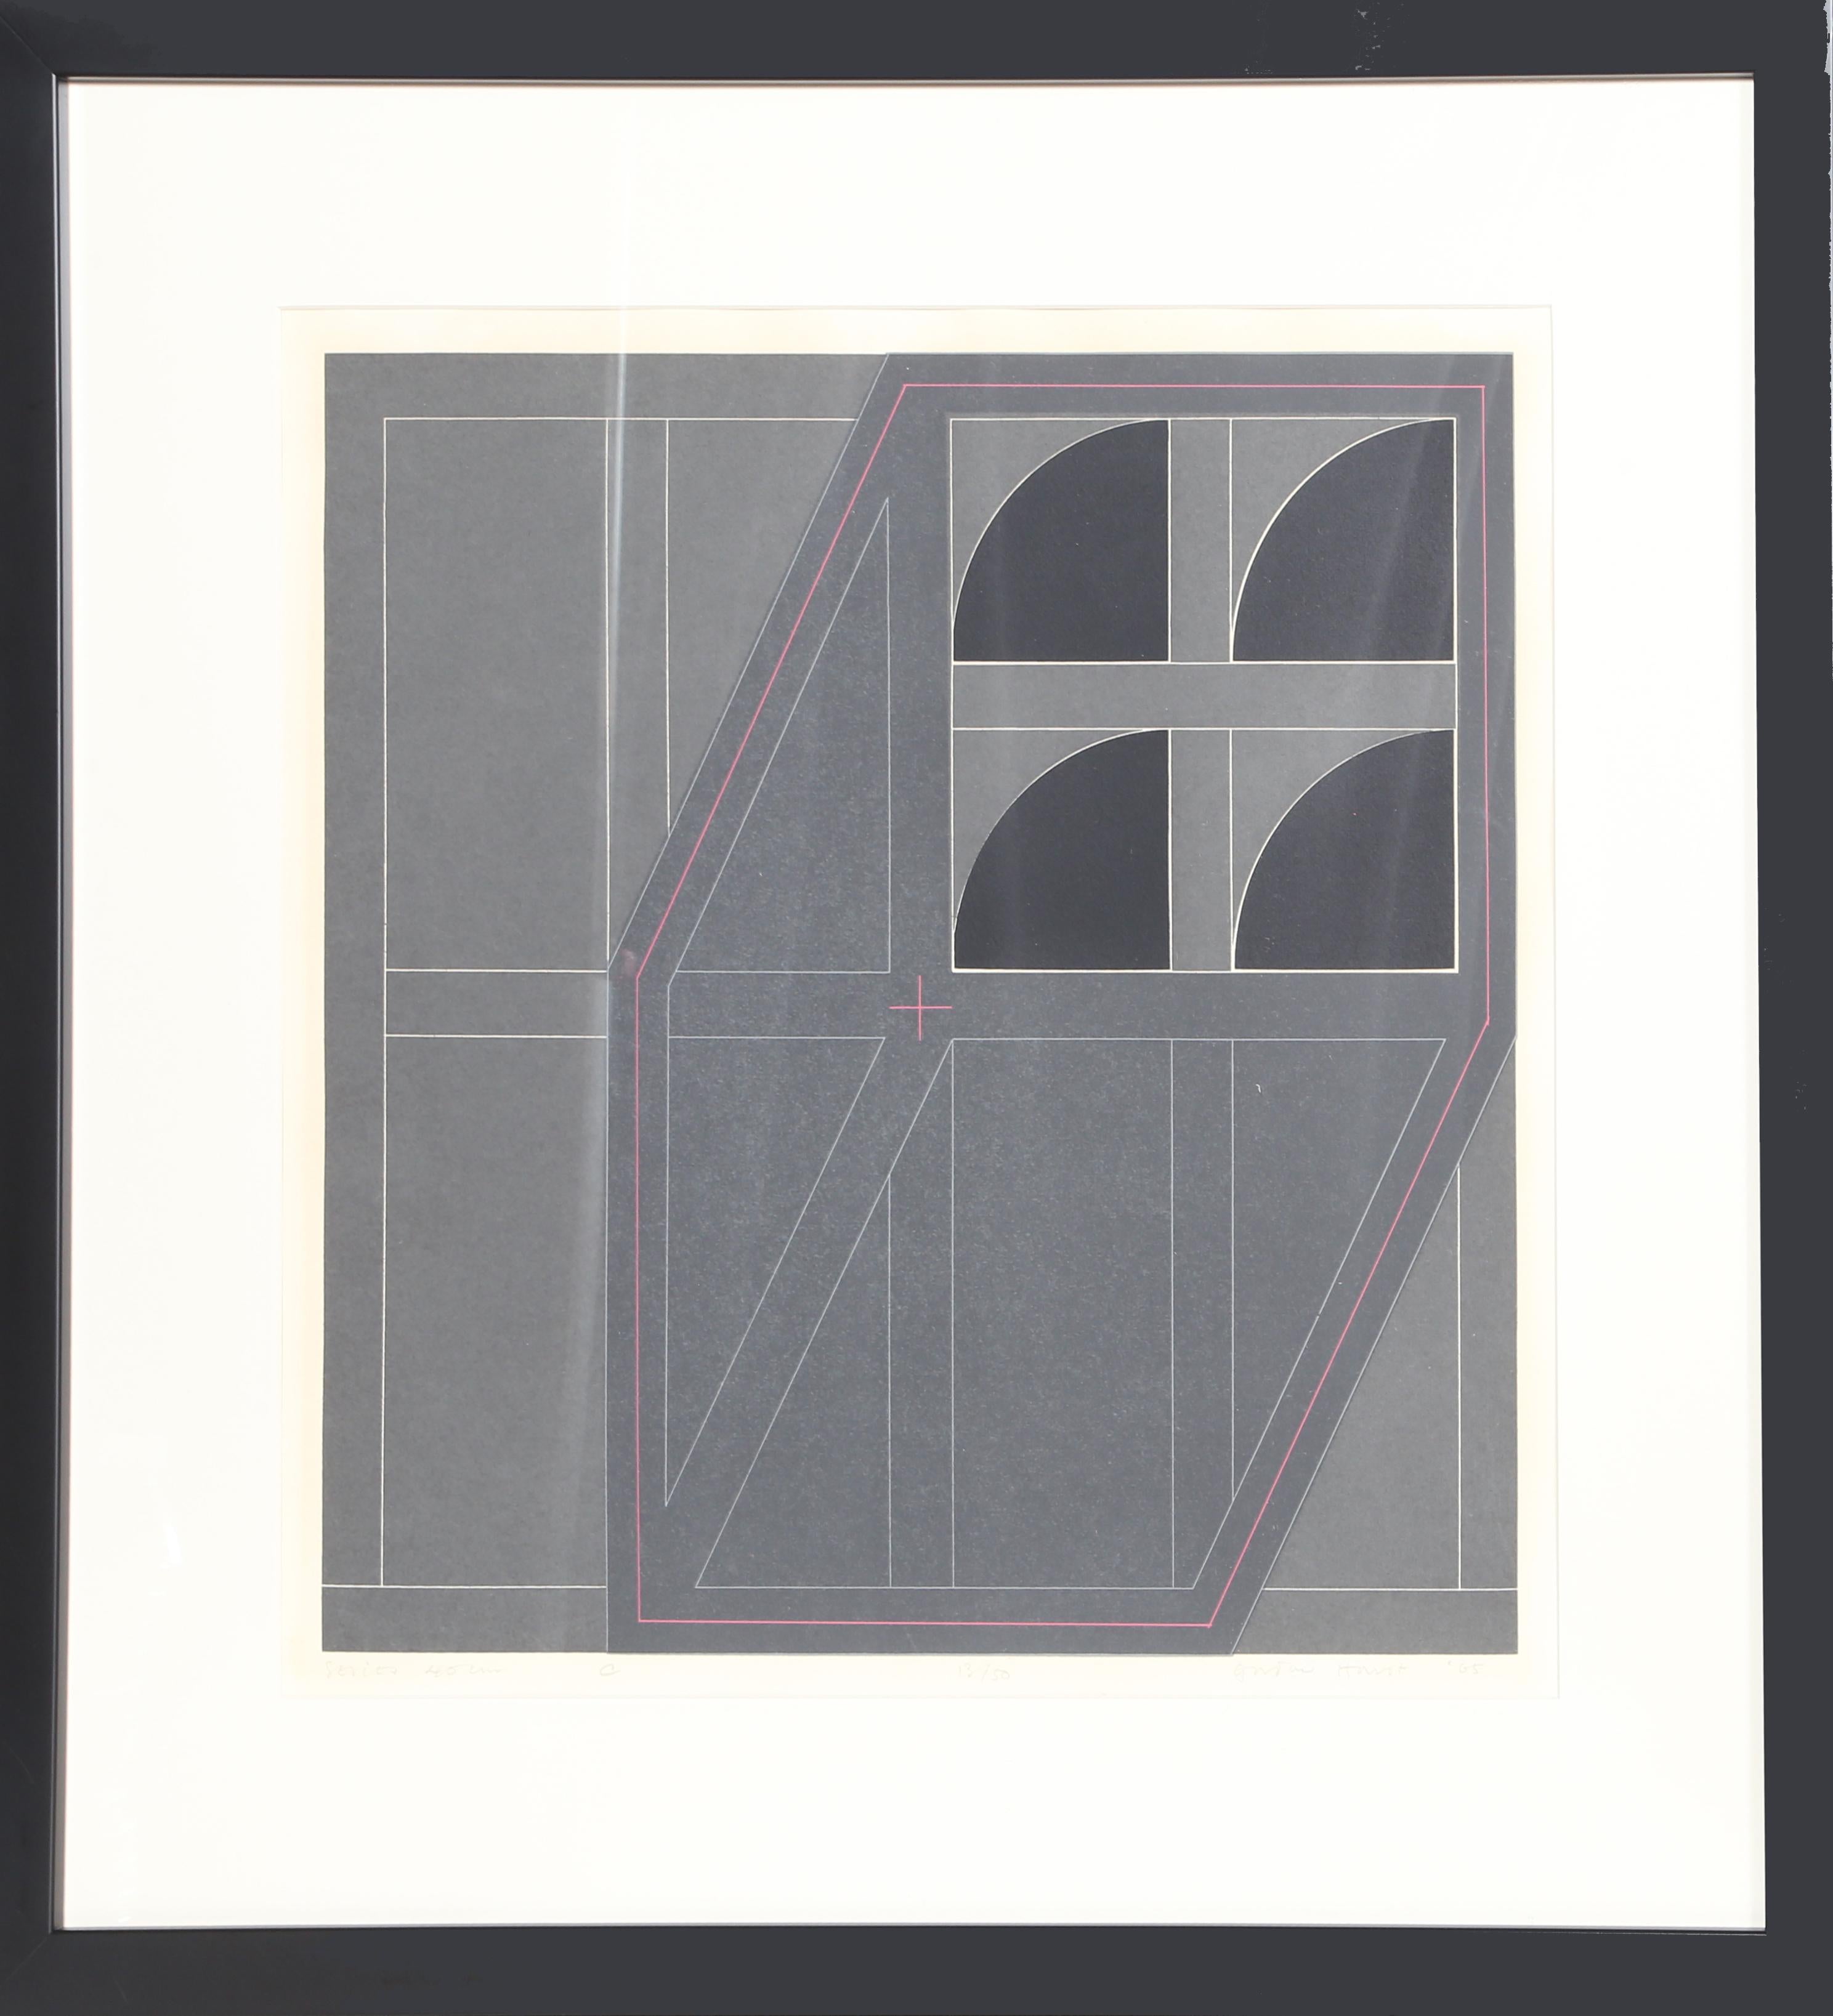 Artistics : Gordon House, britannique (1932 - 2004)
Titre : A.I.C.
Année : 1965
Médium : Sérigraphie, signée et numérotée au crayon.
Edition : 13/50
Taille de l'image : 16 x 15.5 pouces
Taille du cadre : 24 x 24 pouces